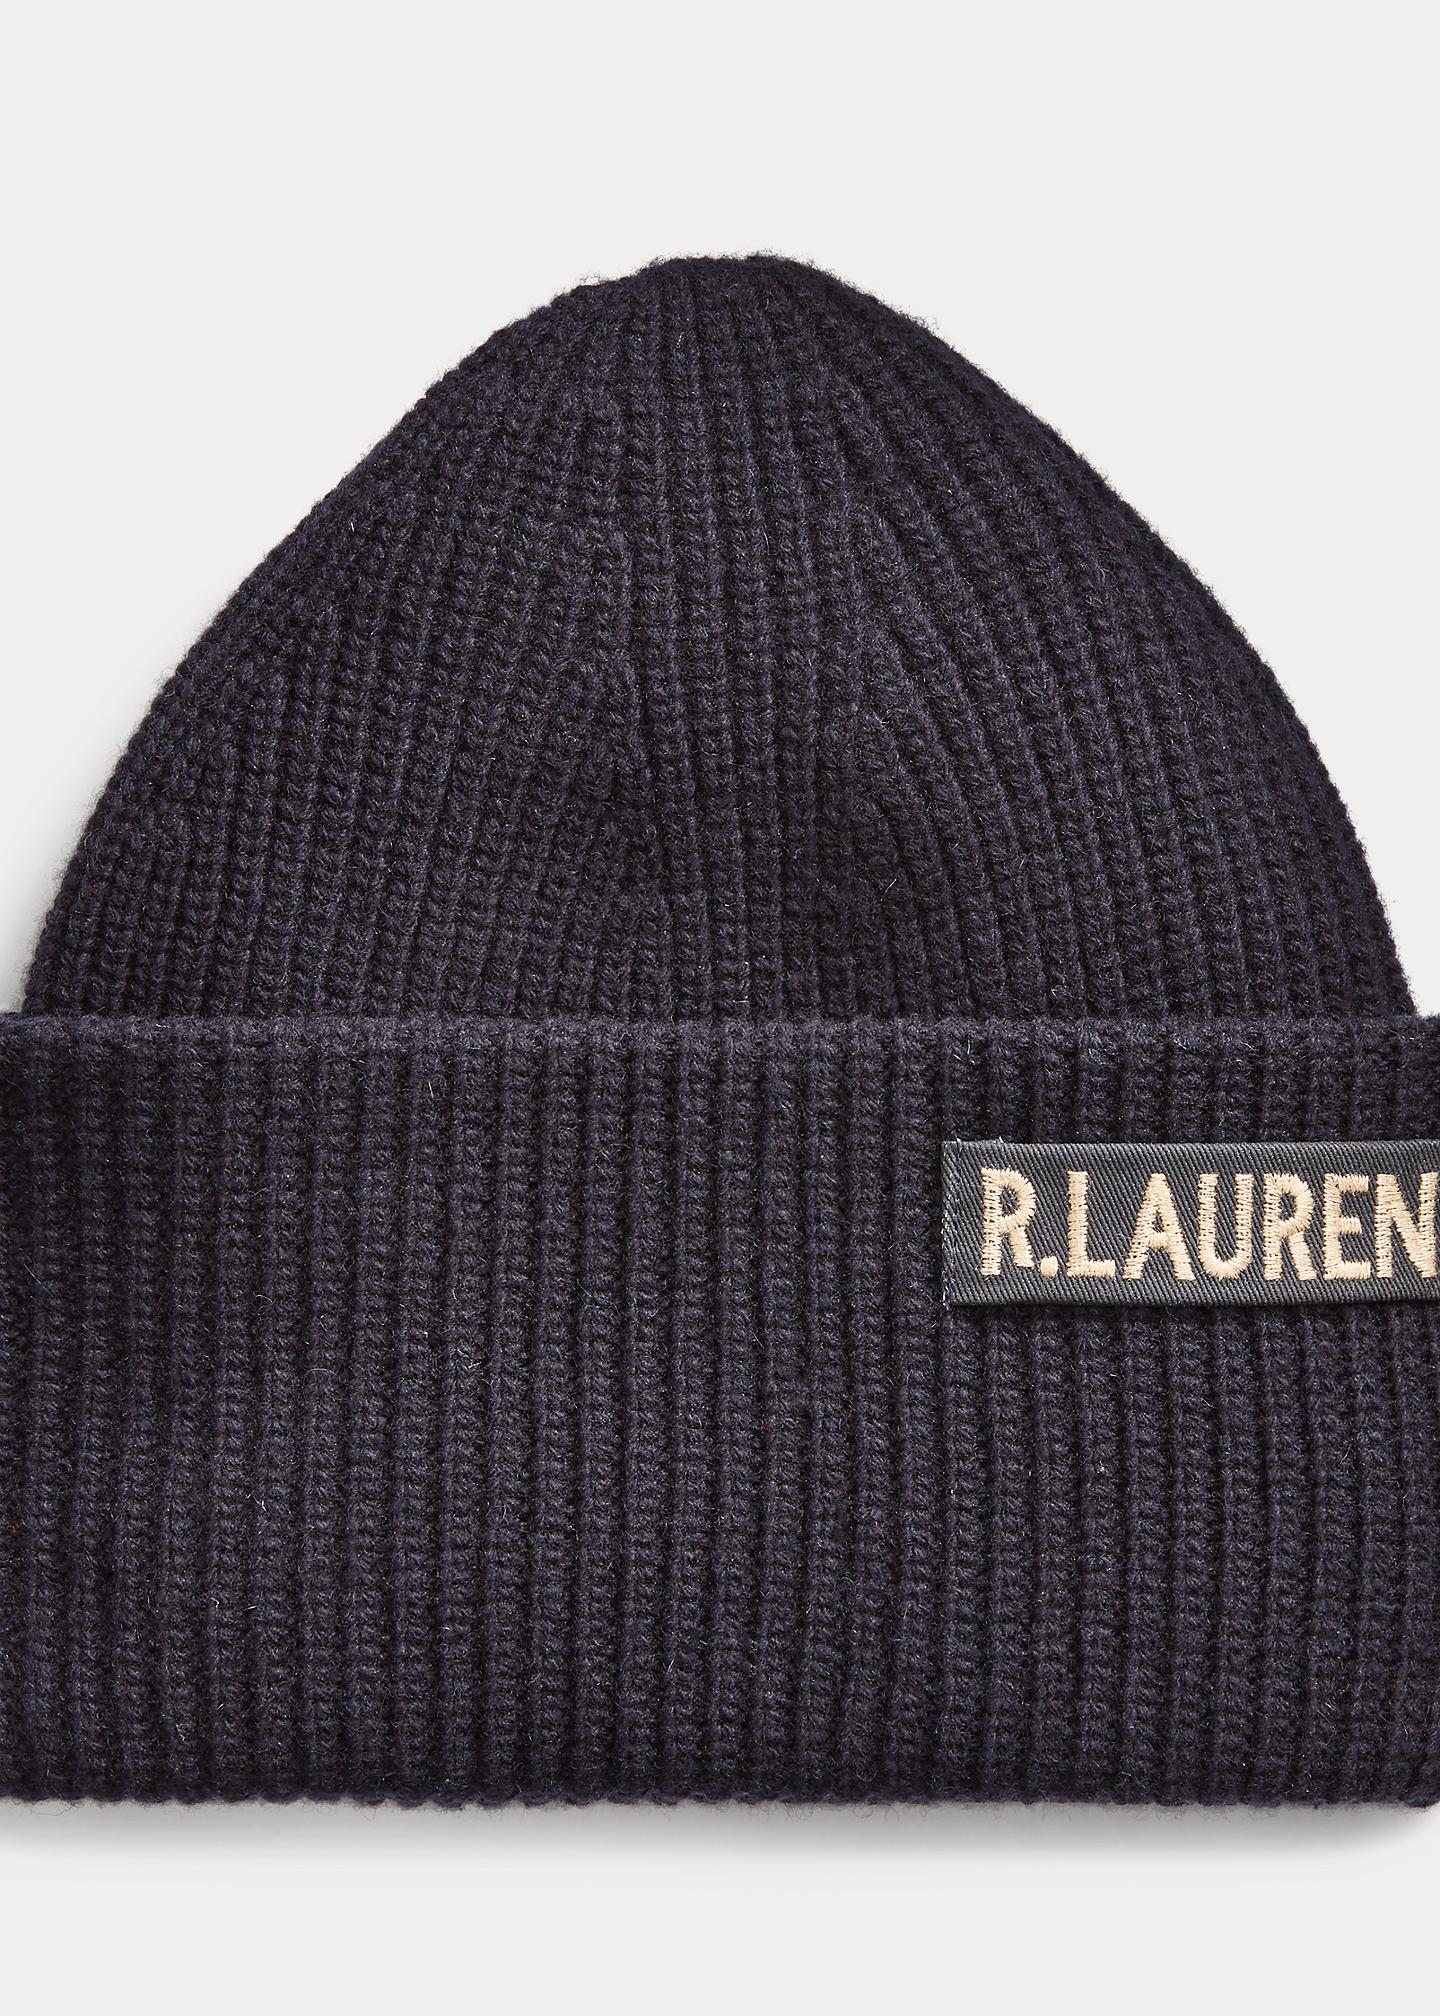 Polo Ralph Lauren Surplus Merino Wool-blend Hat in Blue for Men - Lyst